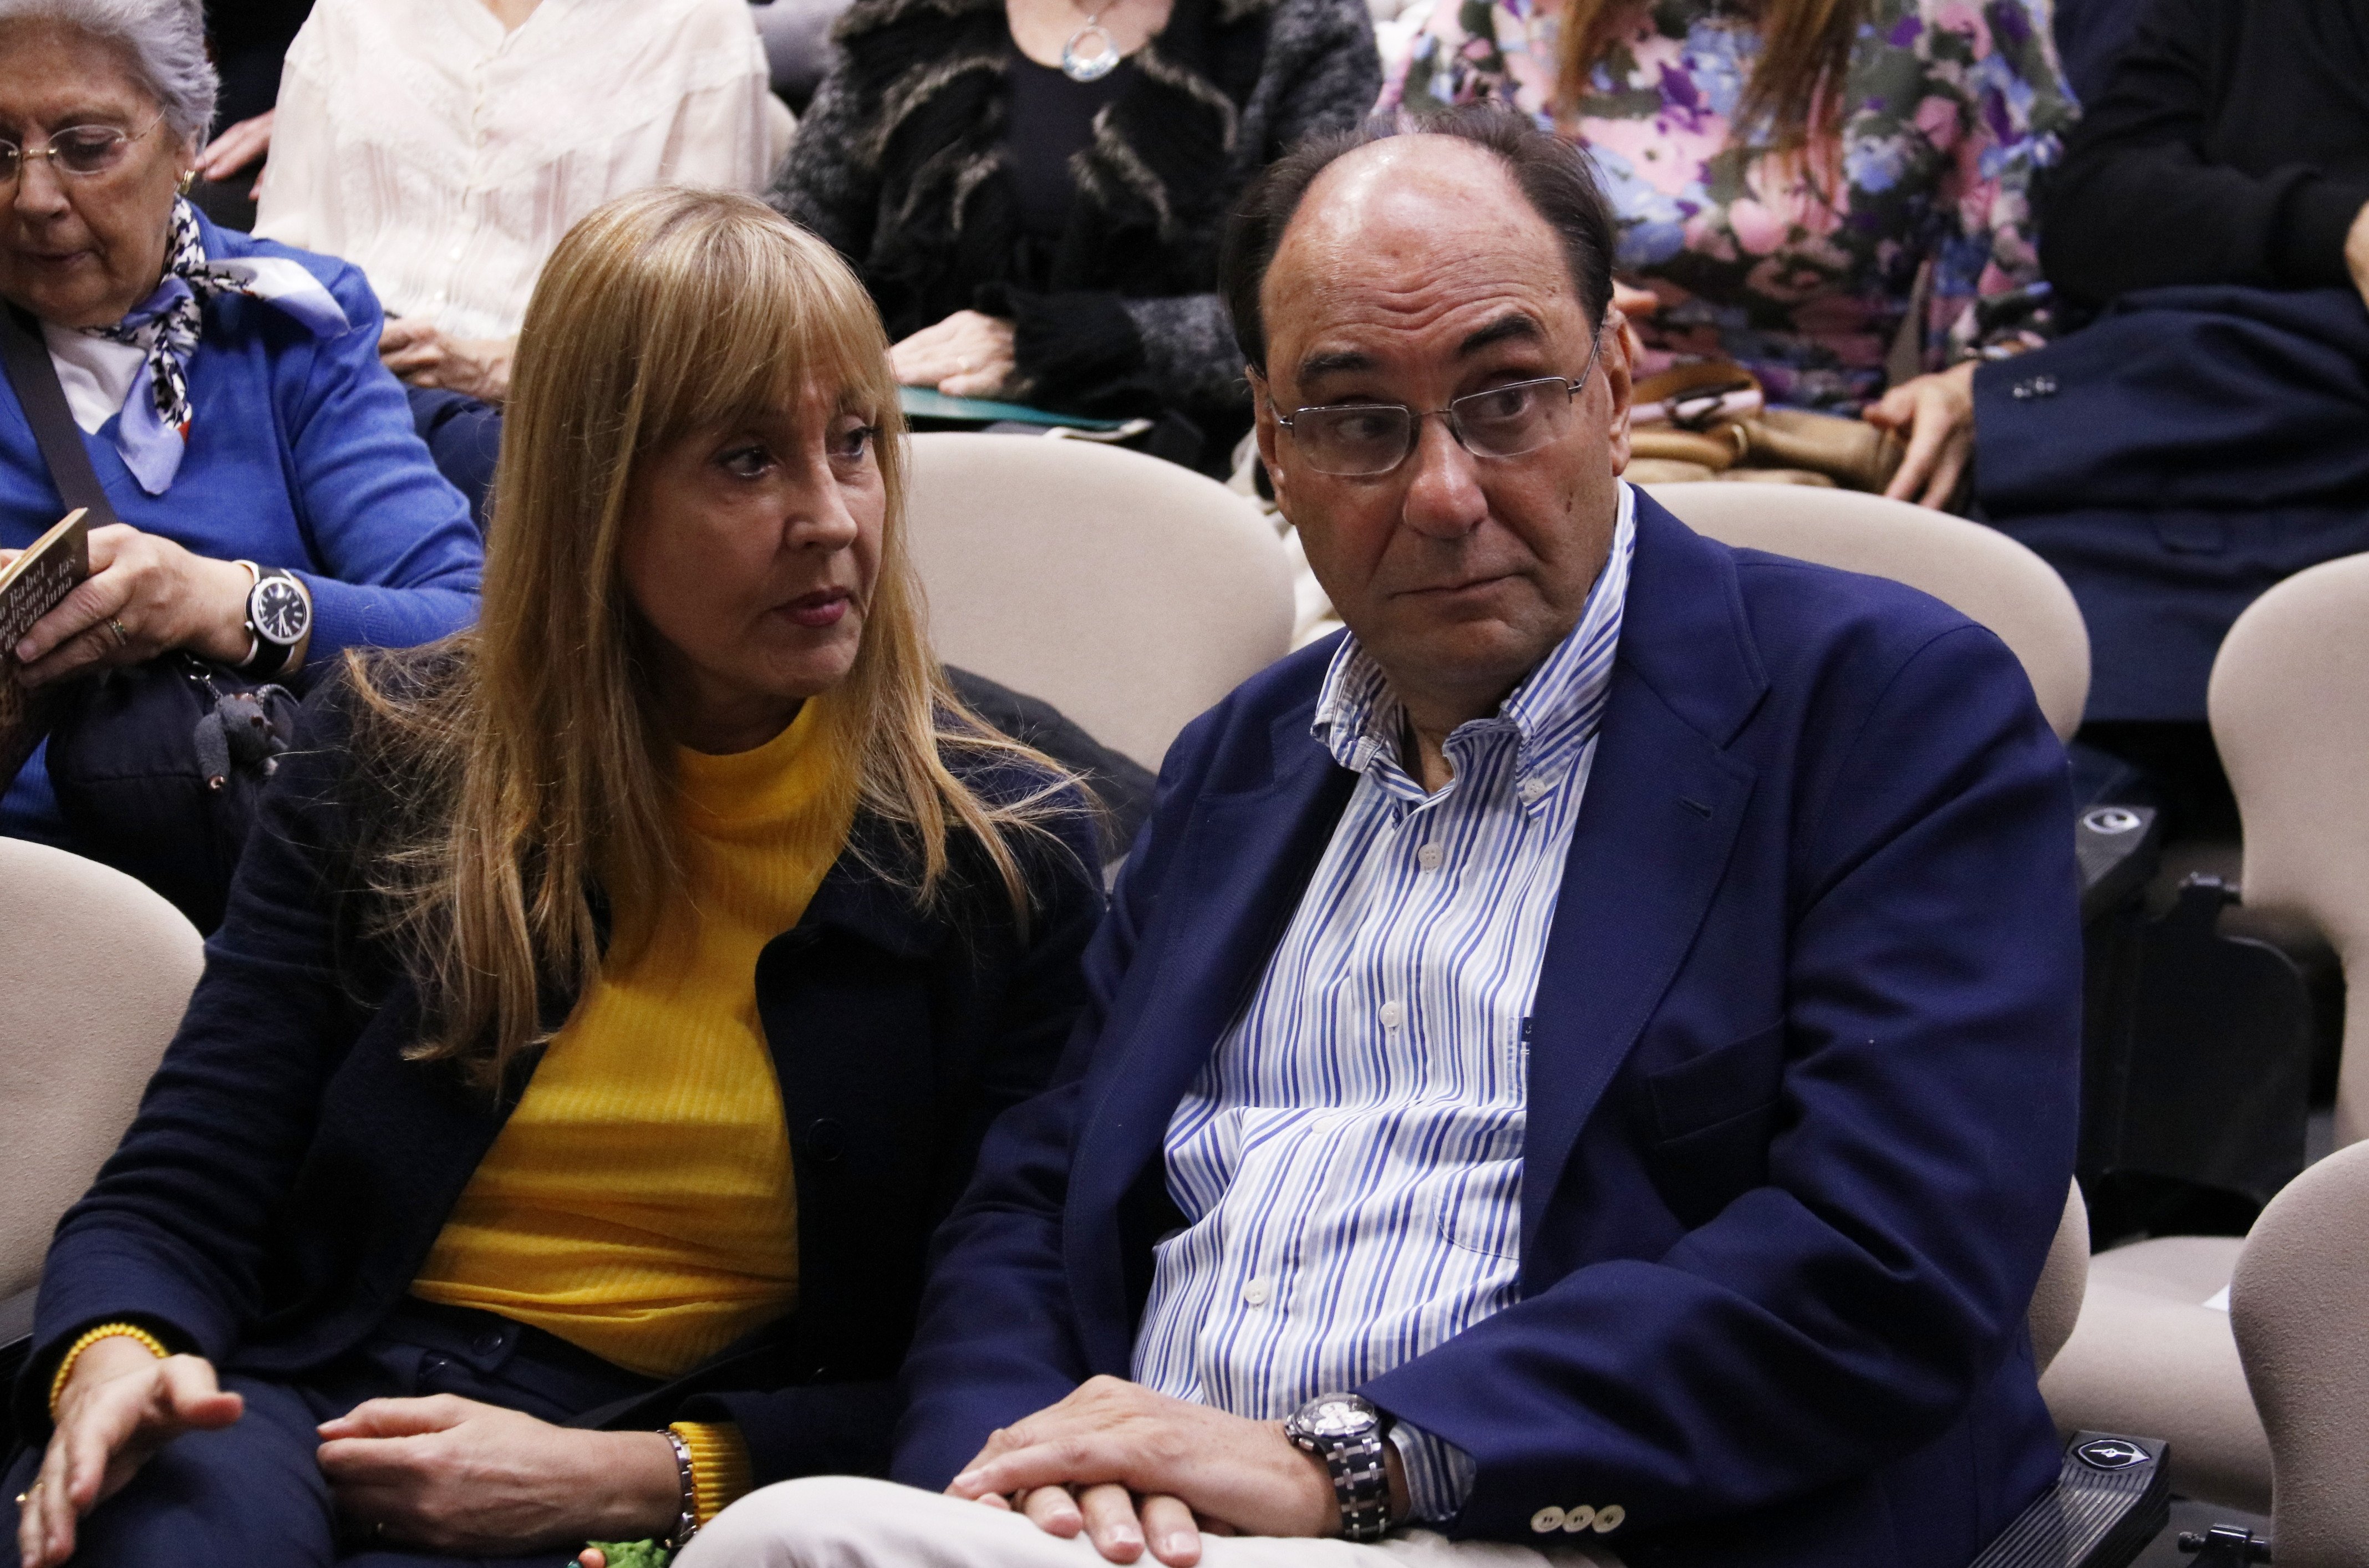 VÍDEO: Vidal-Quadras insulta els catalans i els tracta de bojos